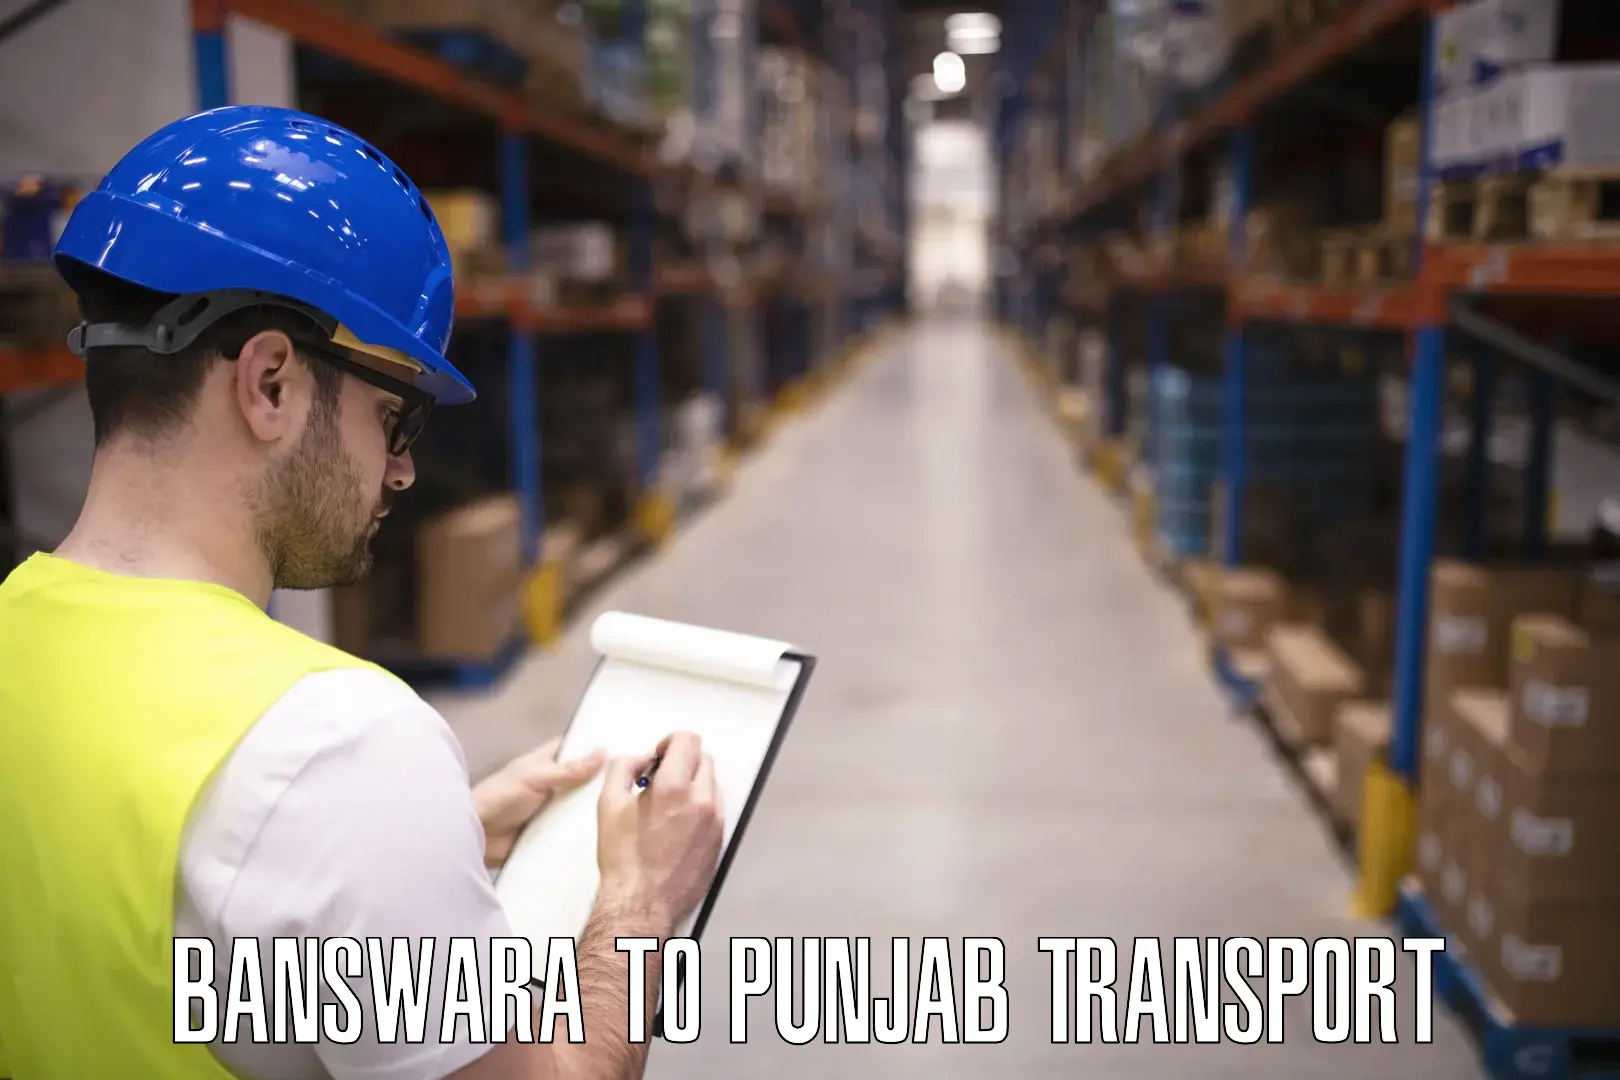 Road transport online services Banswara to Punjab